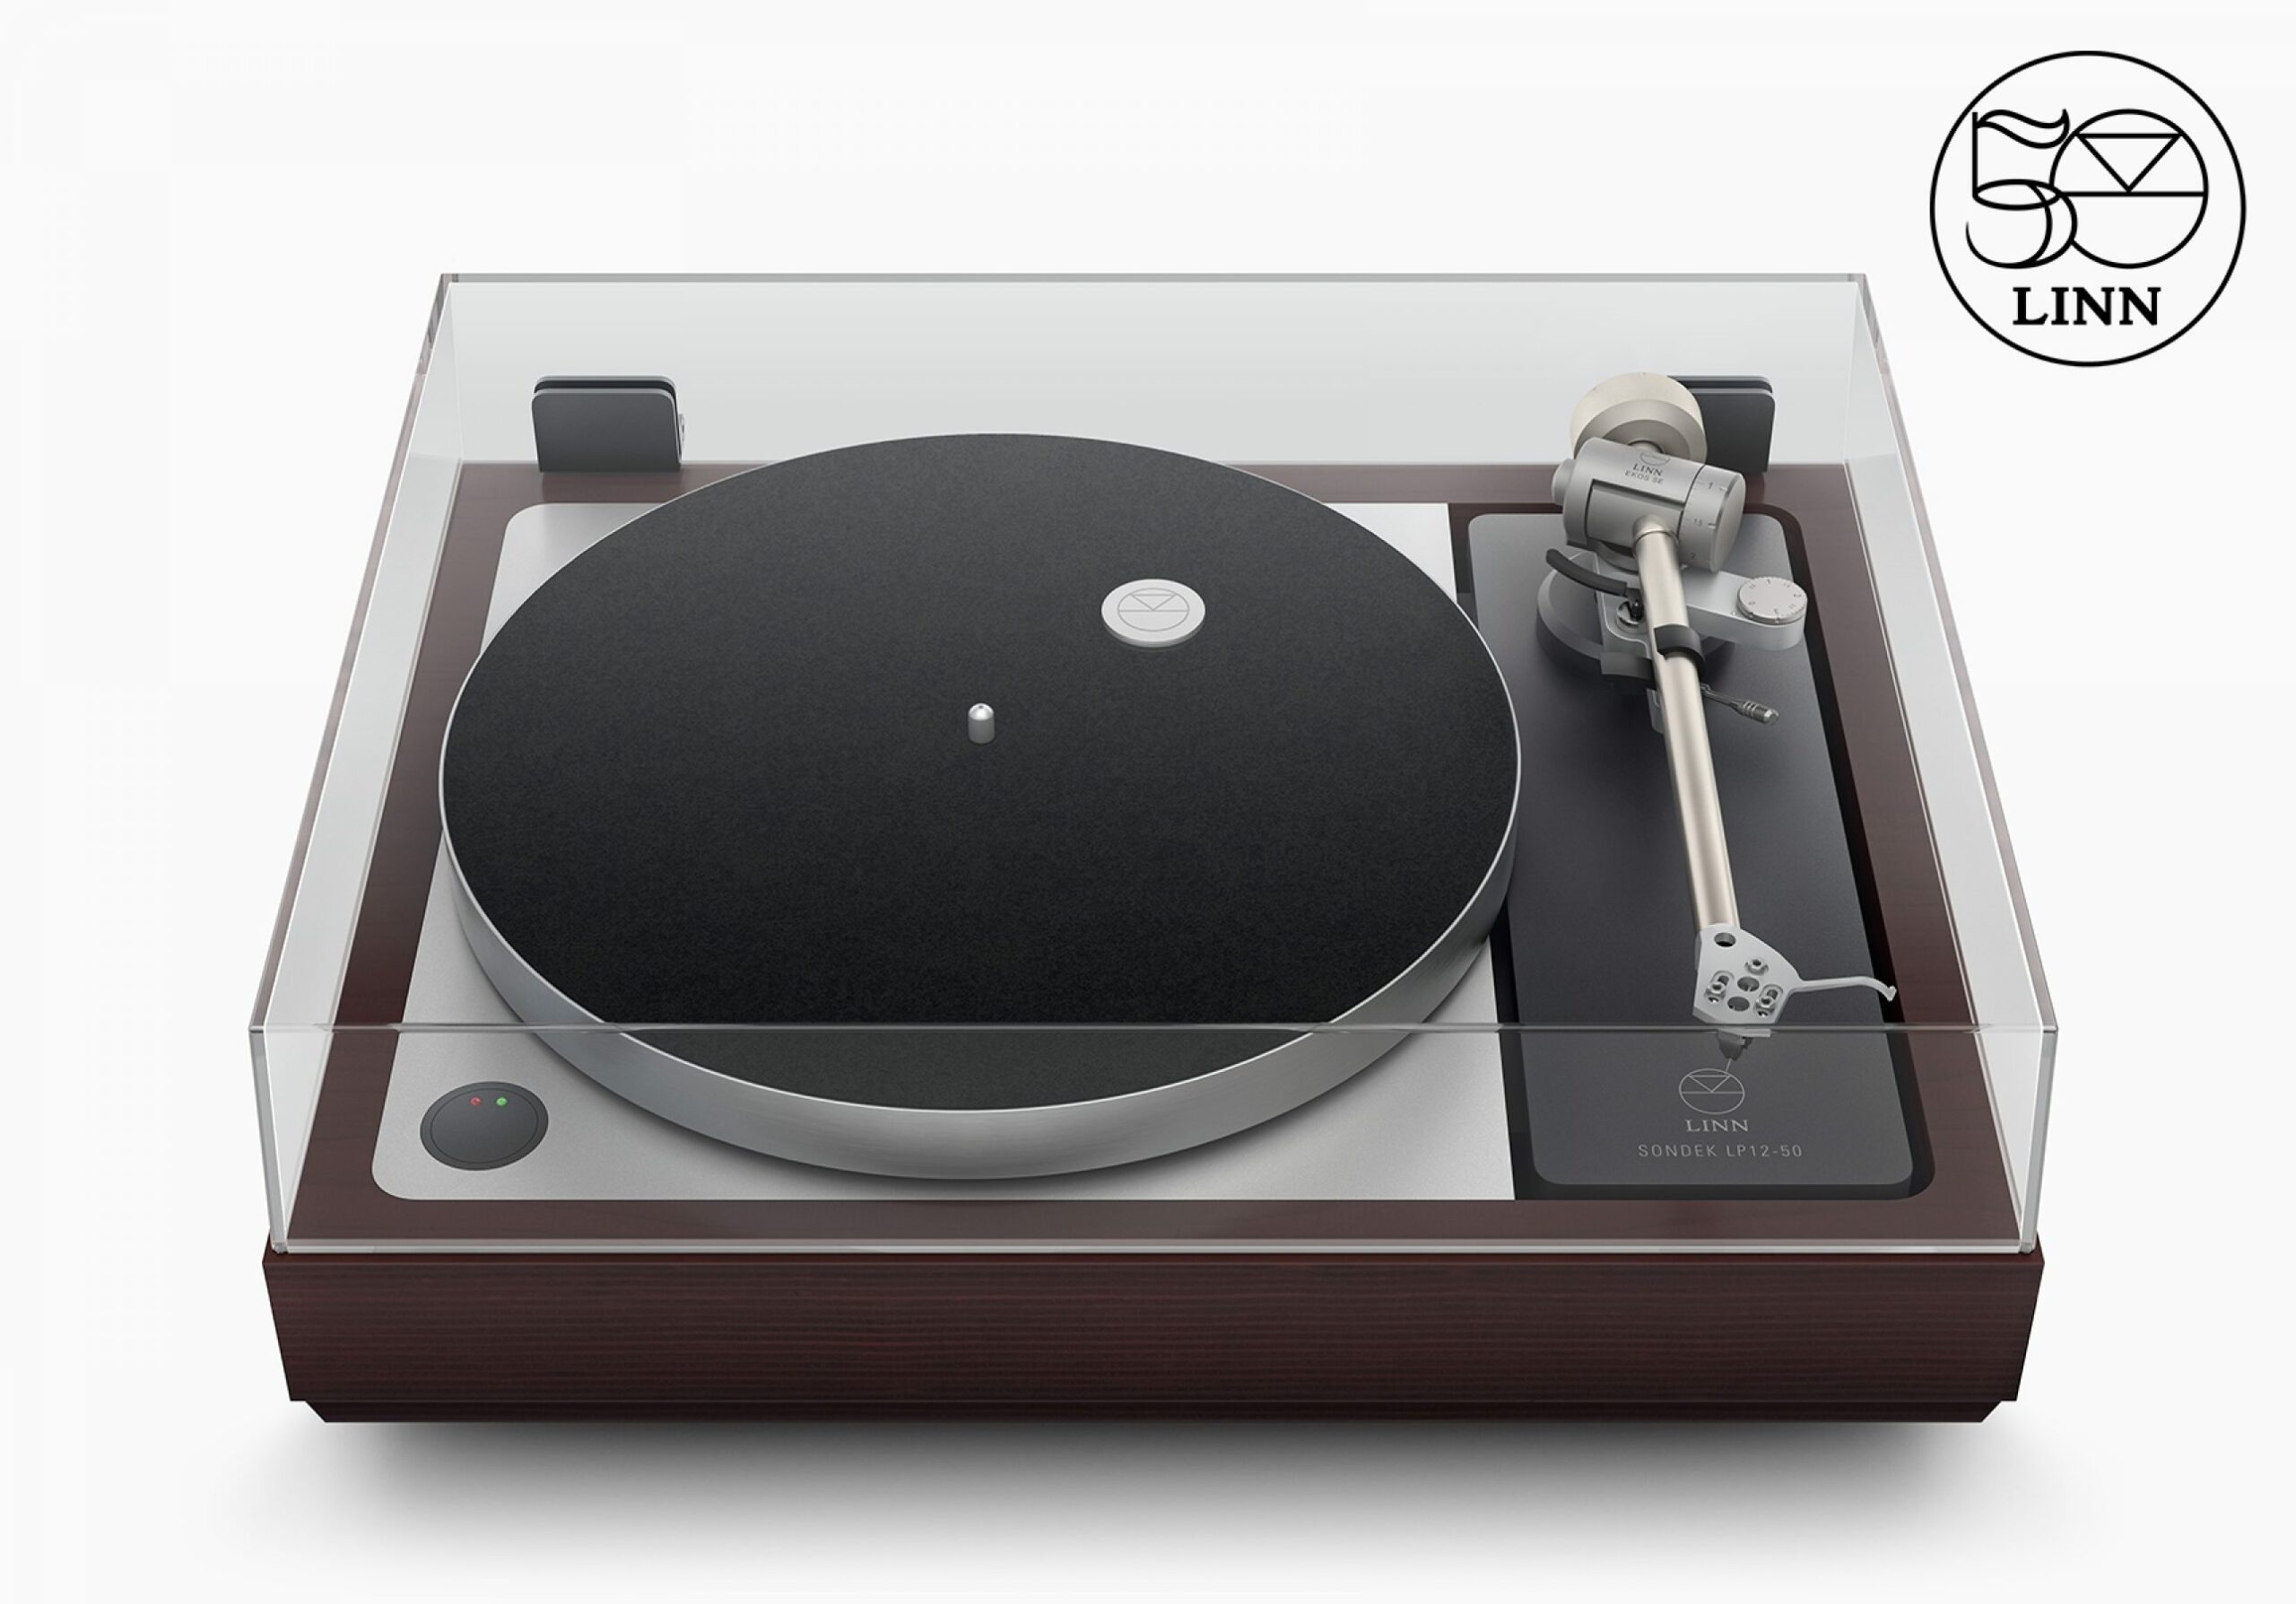 苹果前设计师 Jony Ive 与 Linn 推出定价 50,000 英镑唱片机